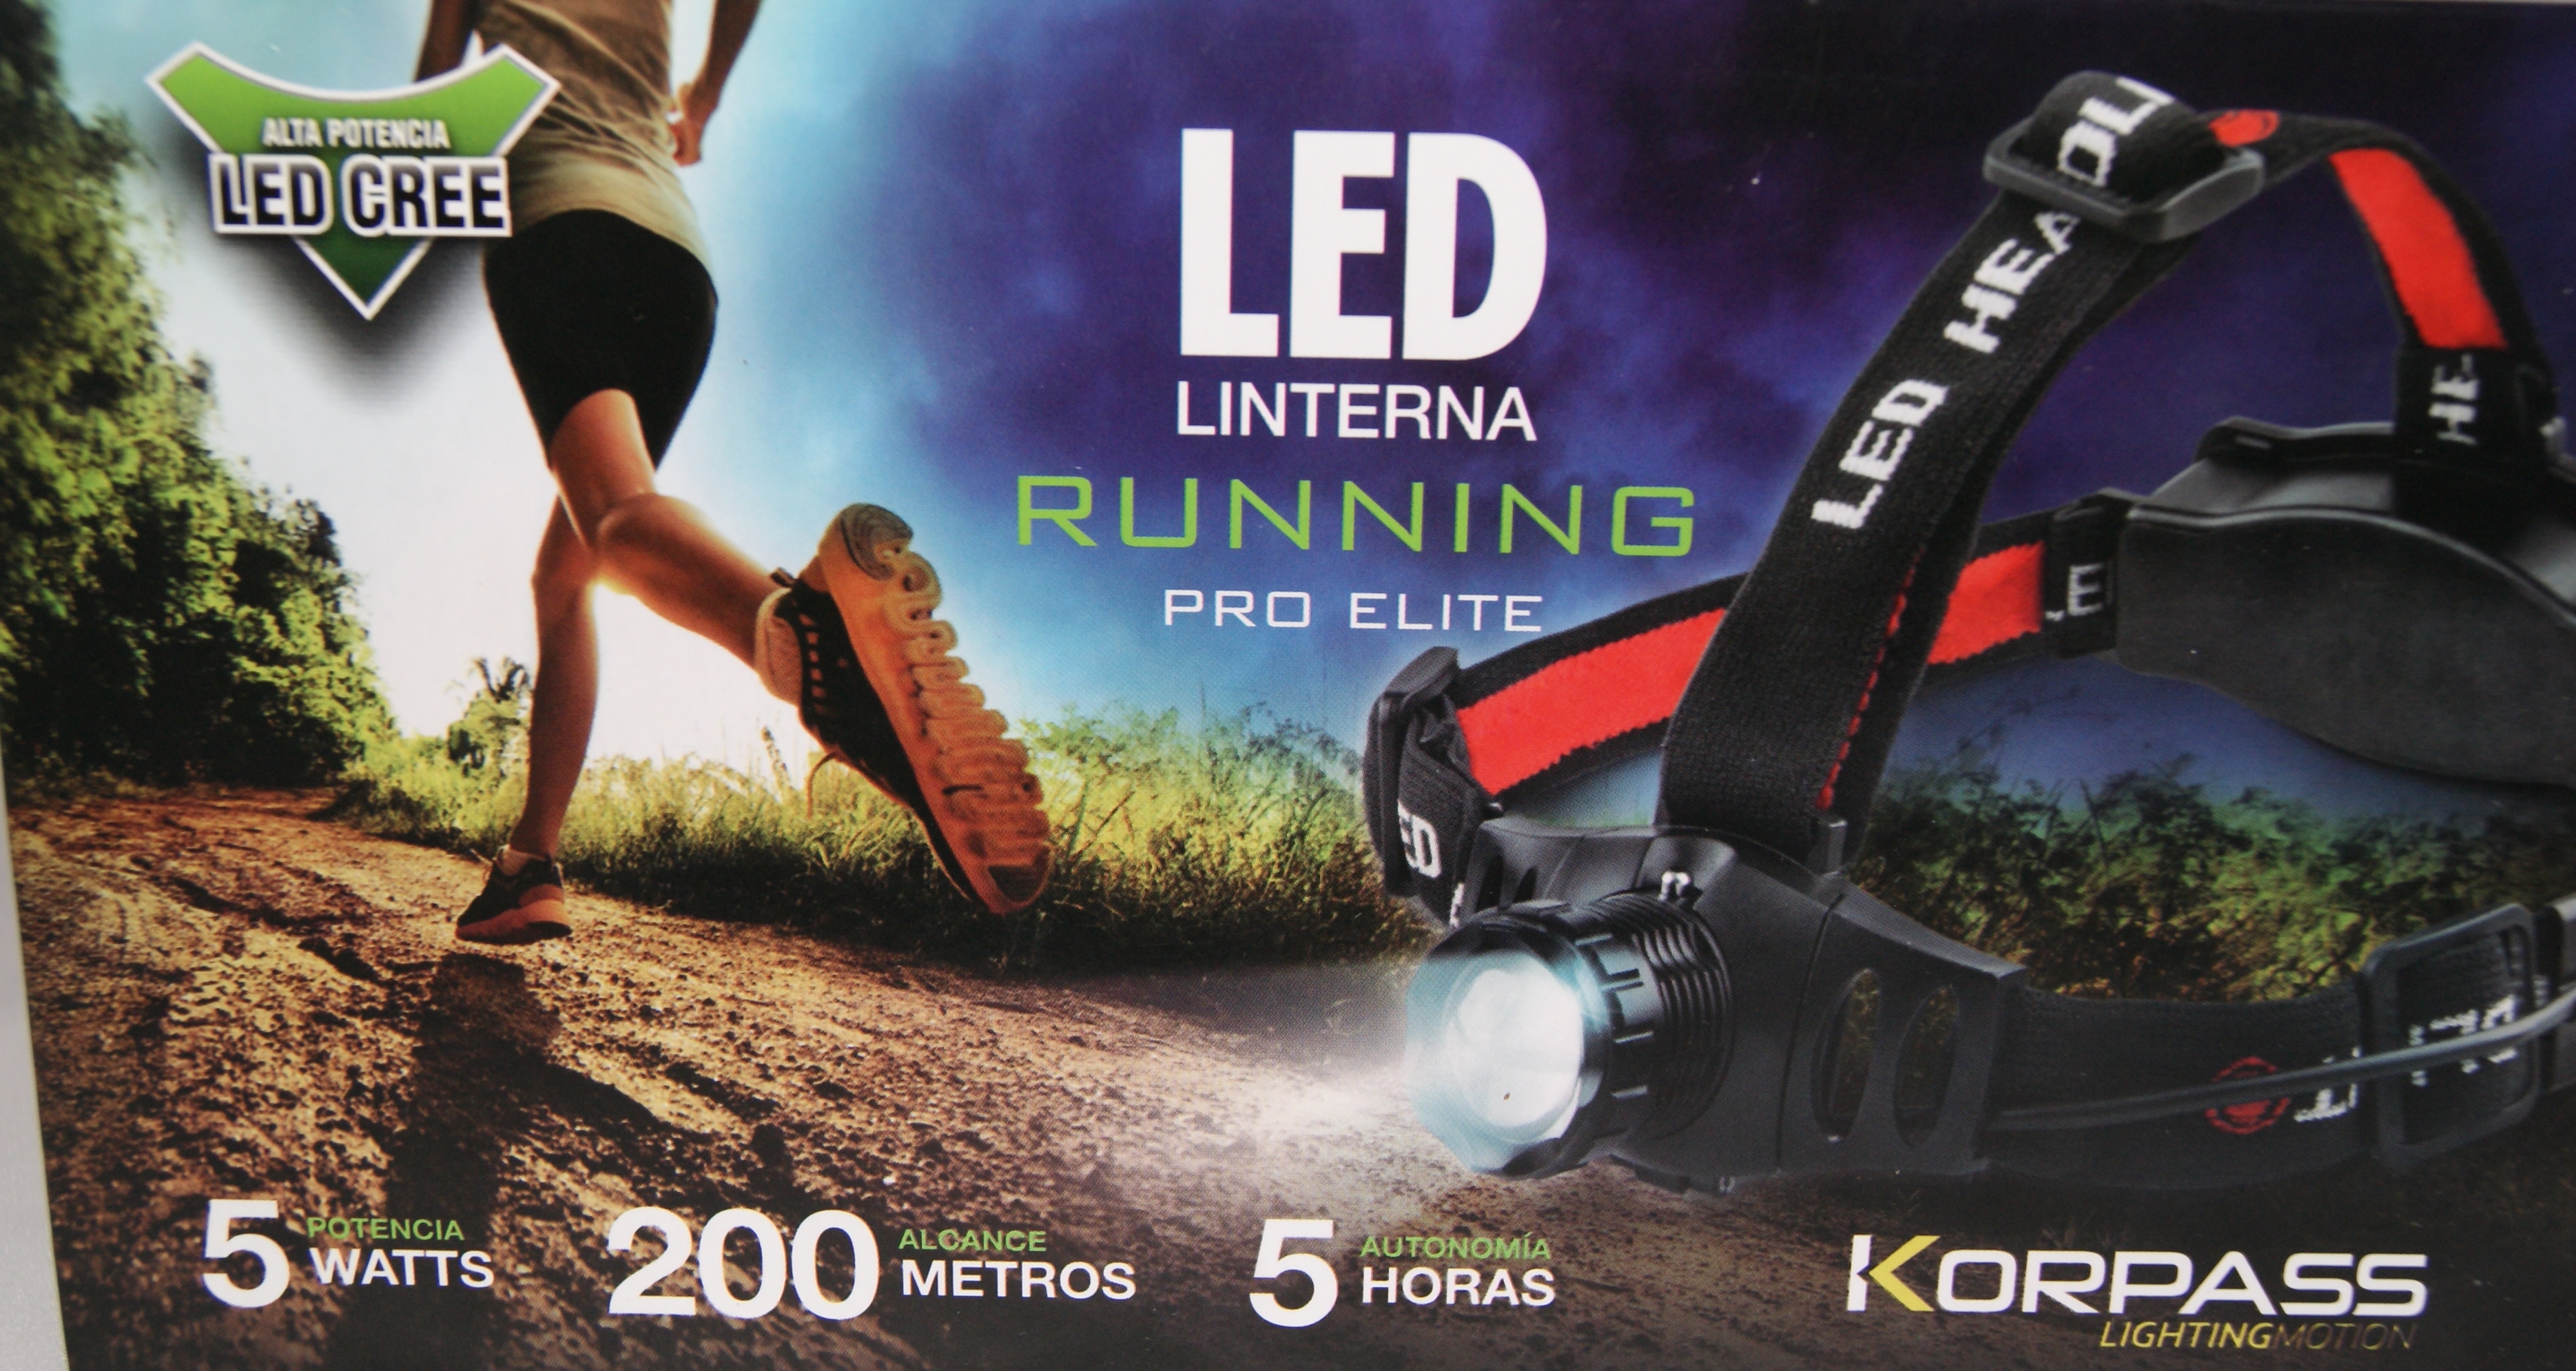 5W LED KORPASS runner pro elite hoofdlamp PRO